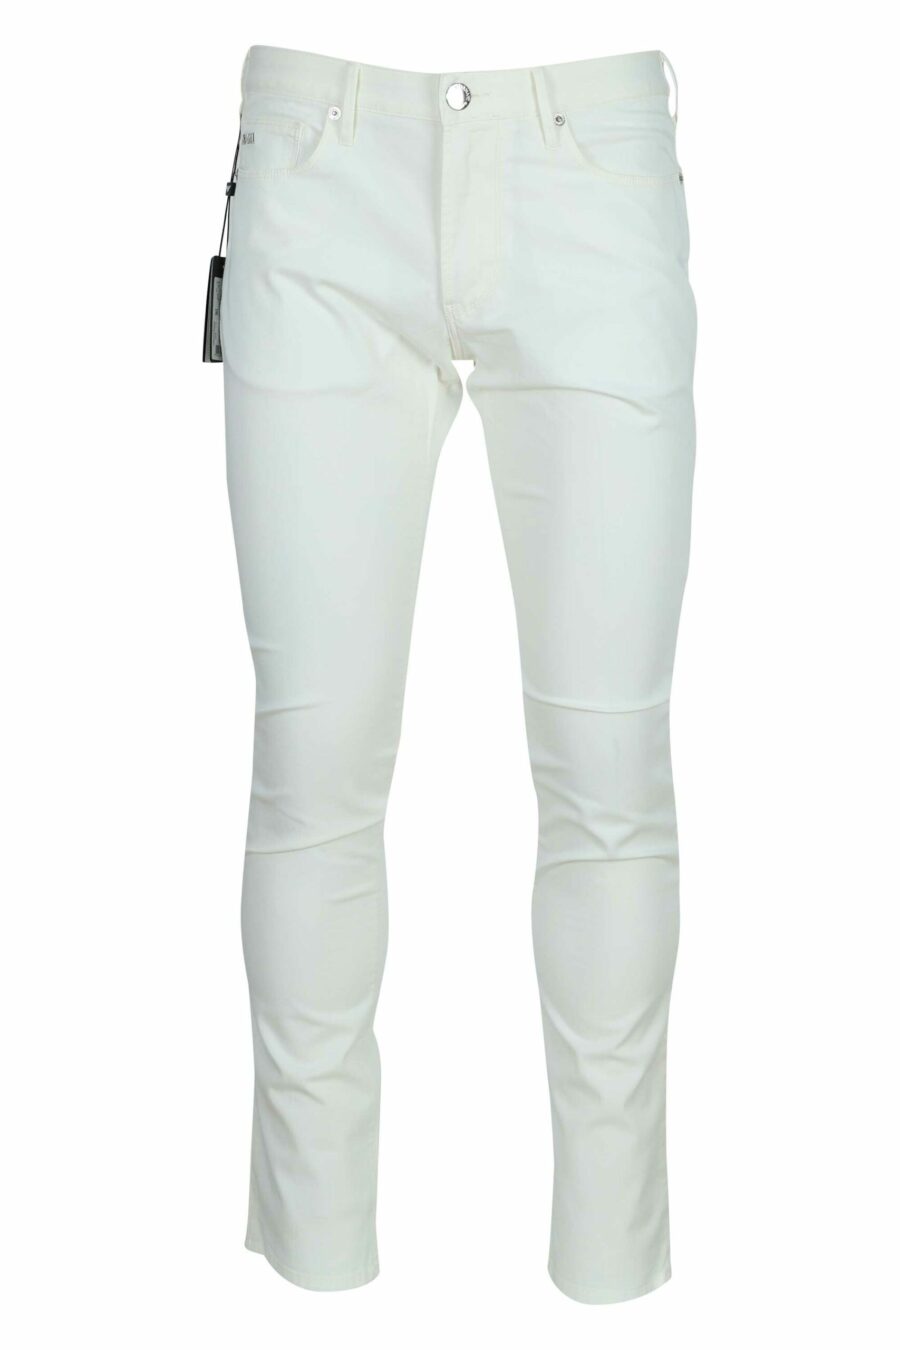 Pantalon en denim blanc avec mini logo aigle en métal - 8056861951946